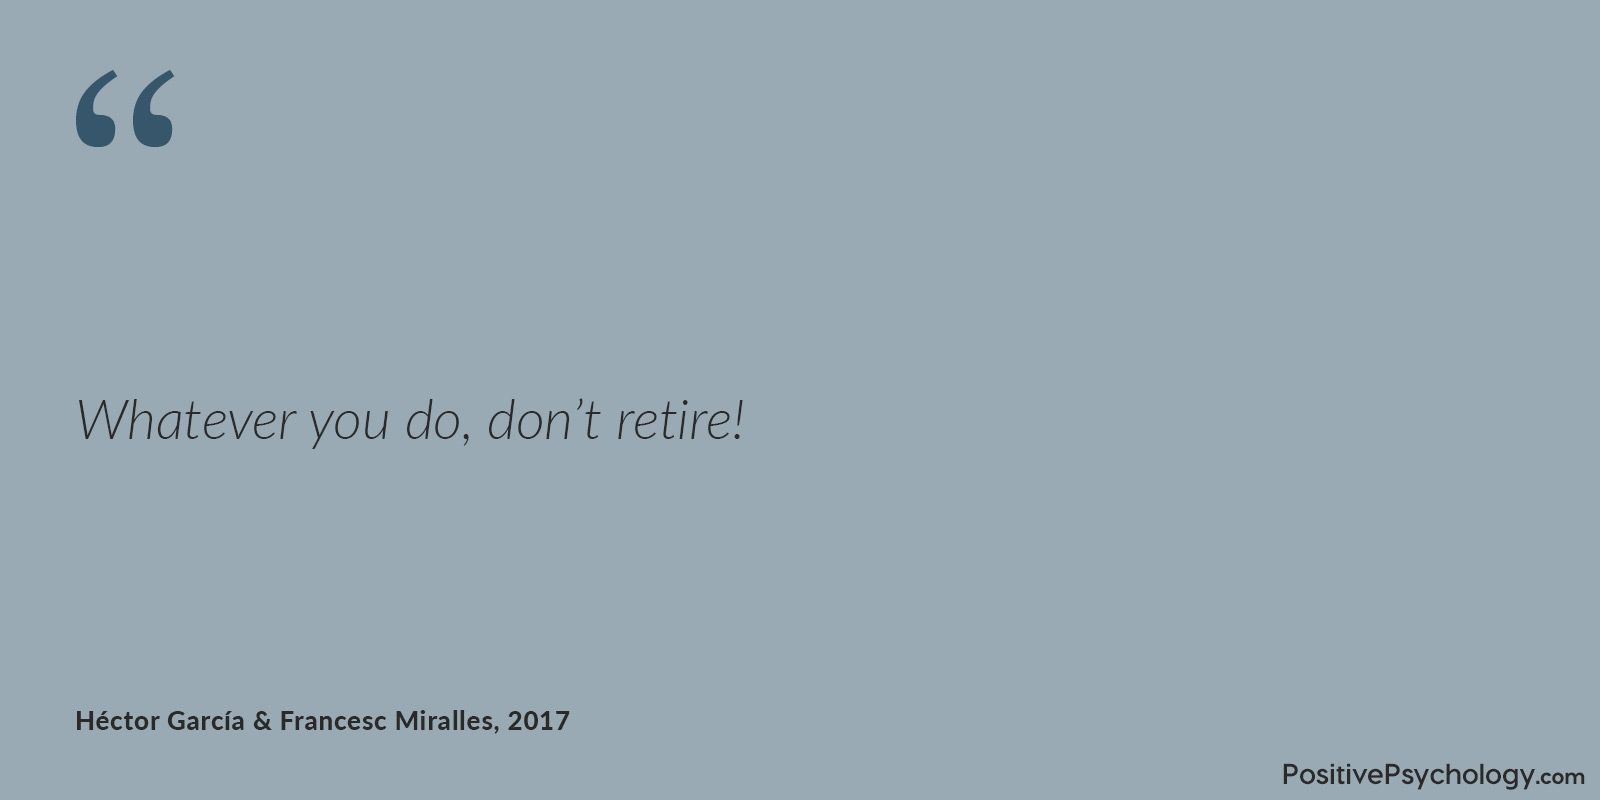 Don't retire